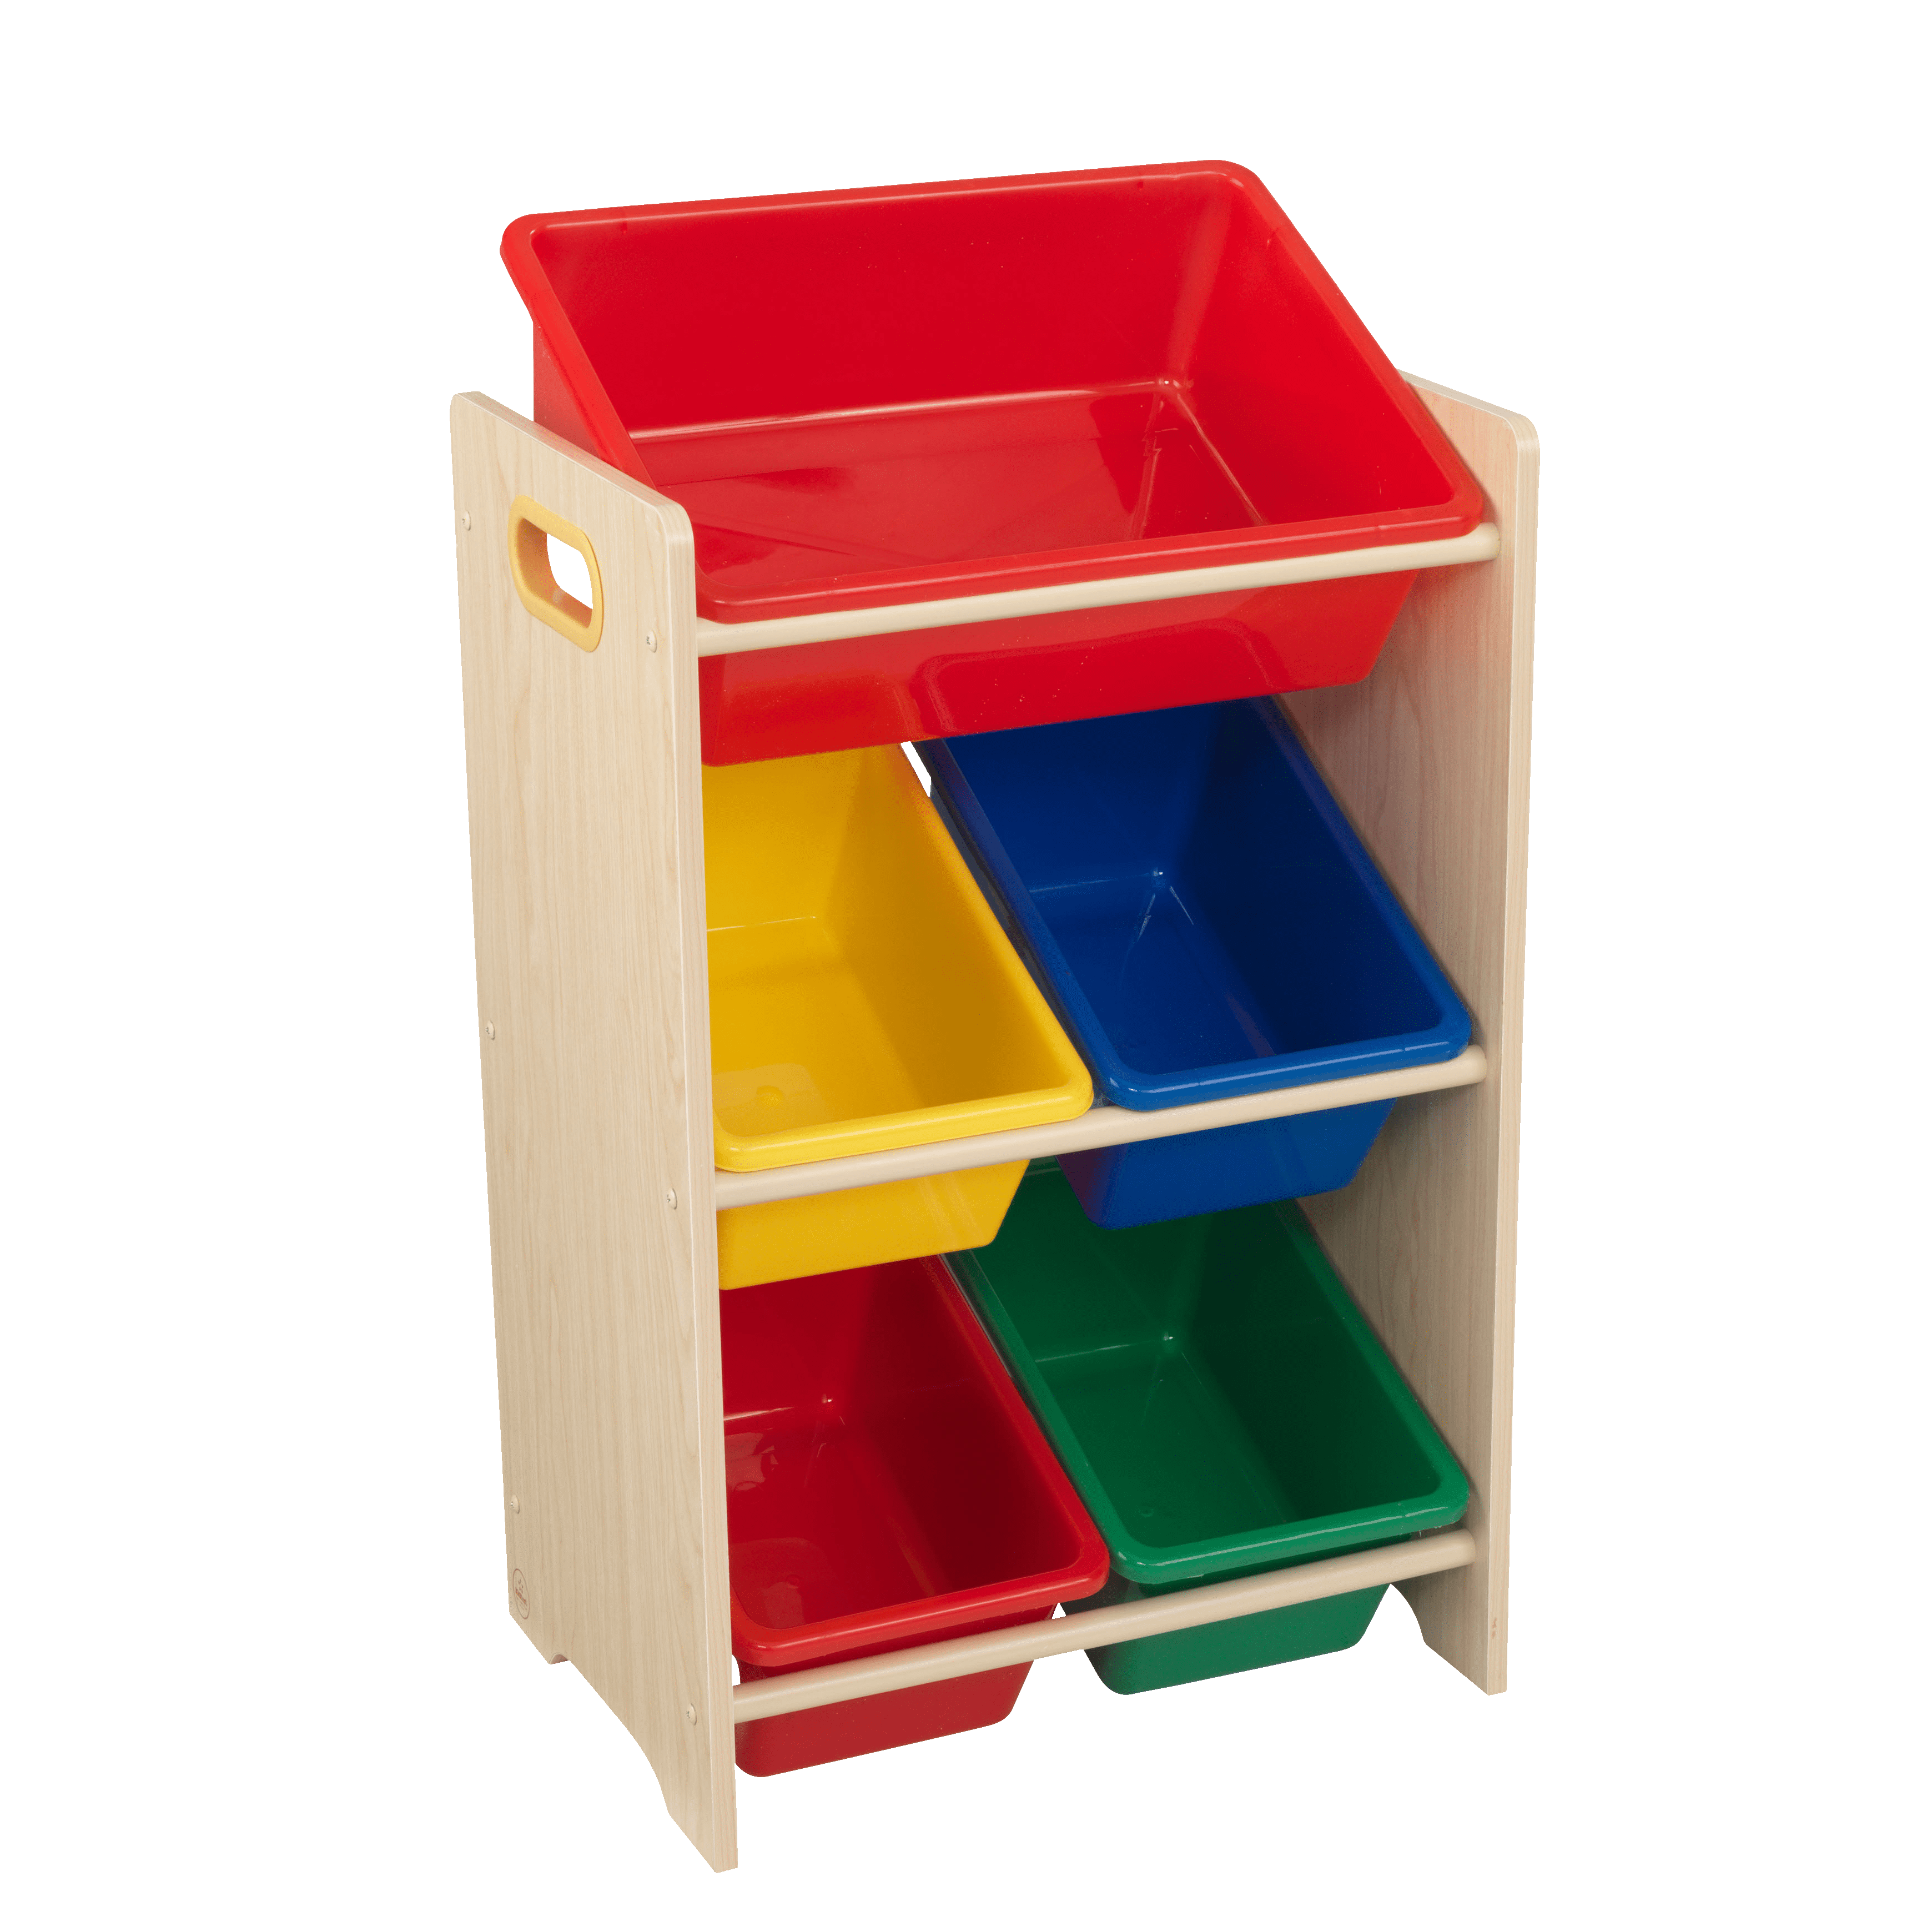 toy storage units with bins